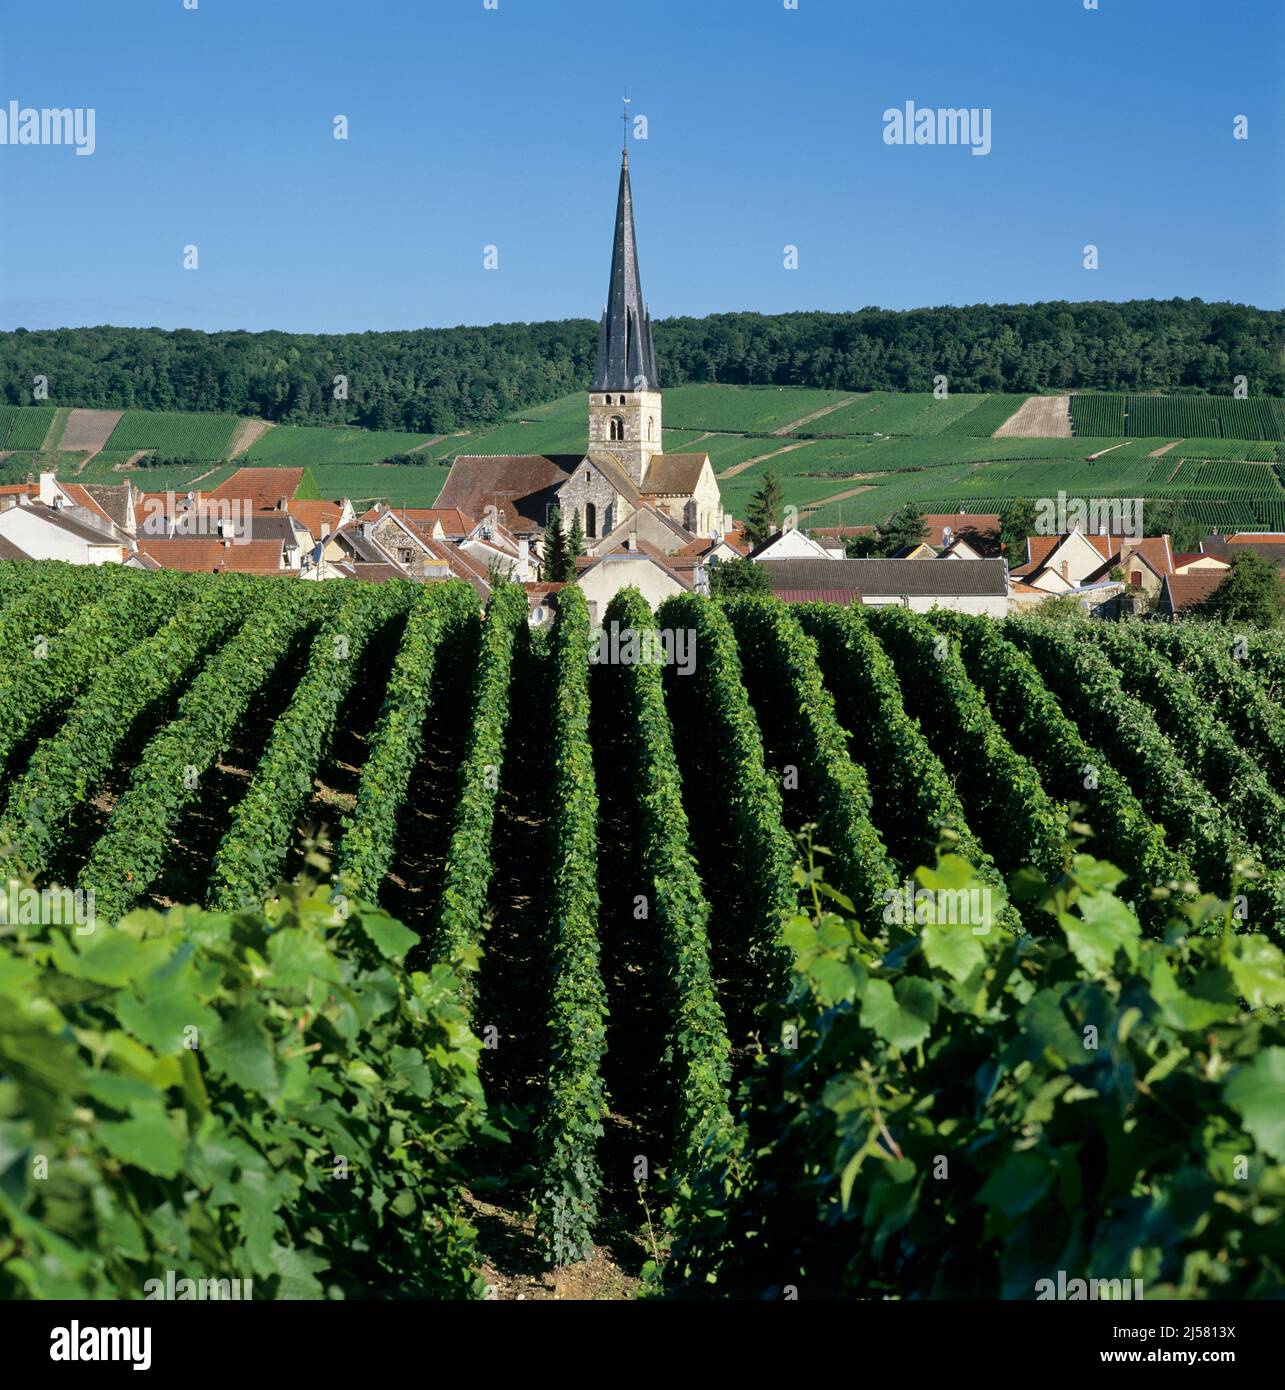 Vignobles autour de l'église et du village, Villers aux Noeuds, Champagne, France, Europe Banque D'Images